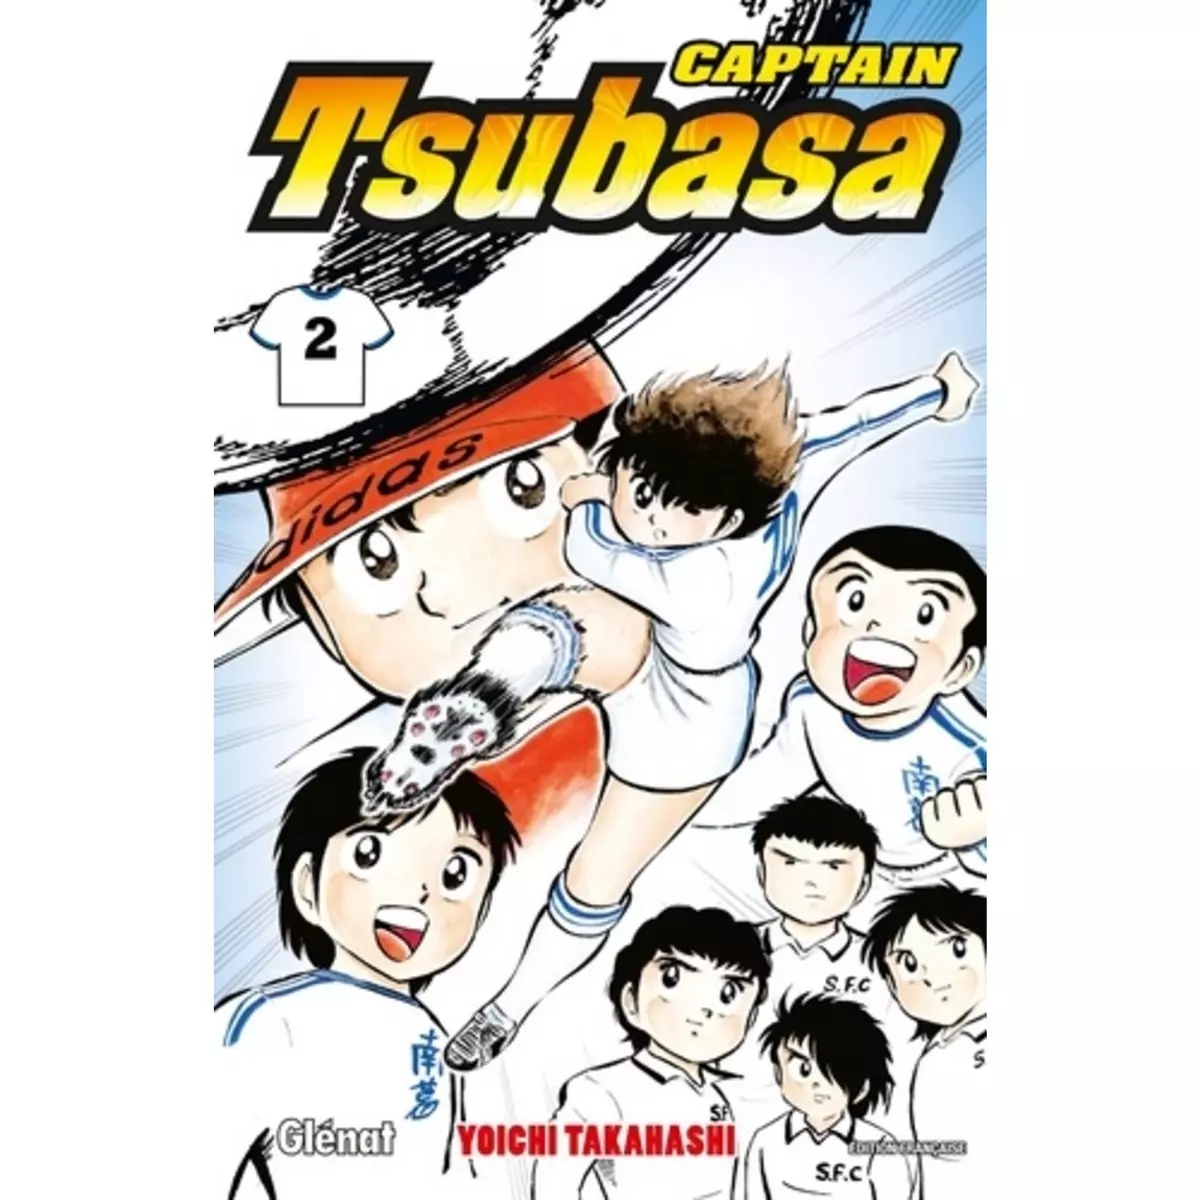  CAPTAIN TSUBASA TOME 2, Takahashi